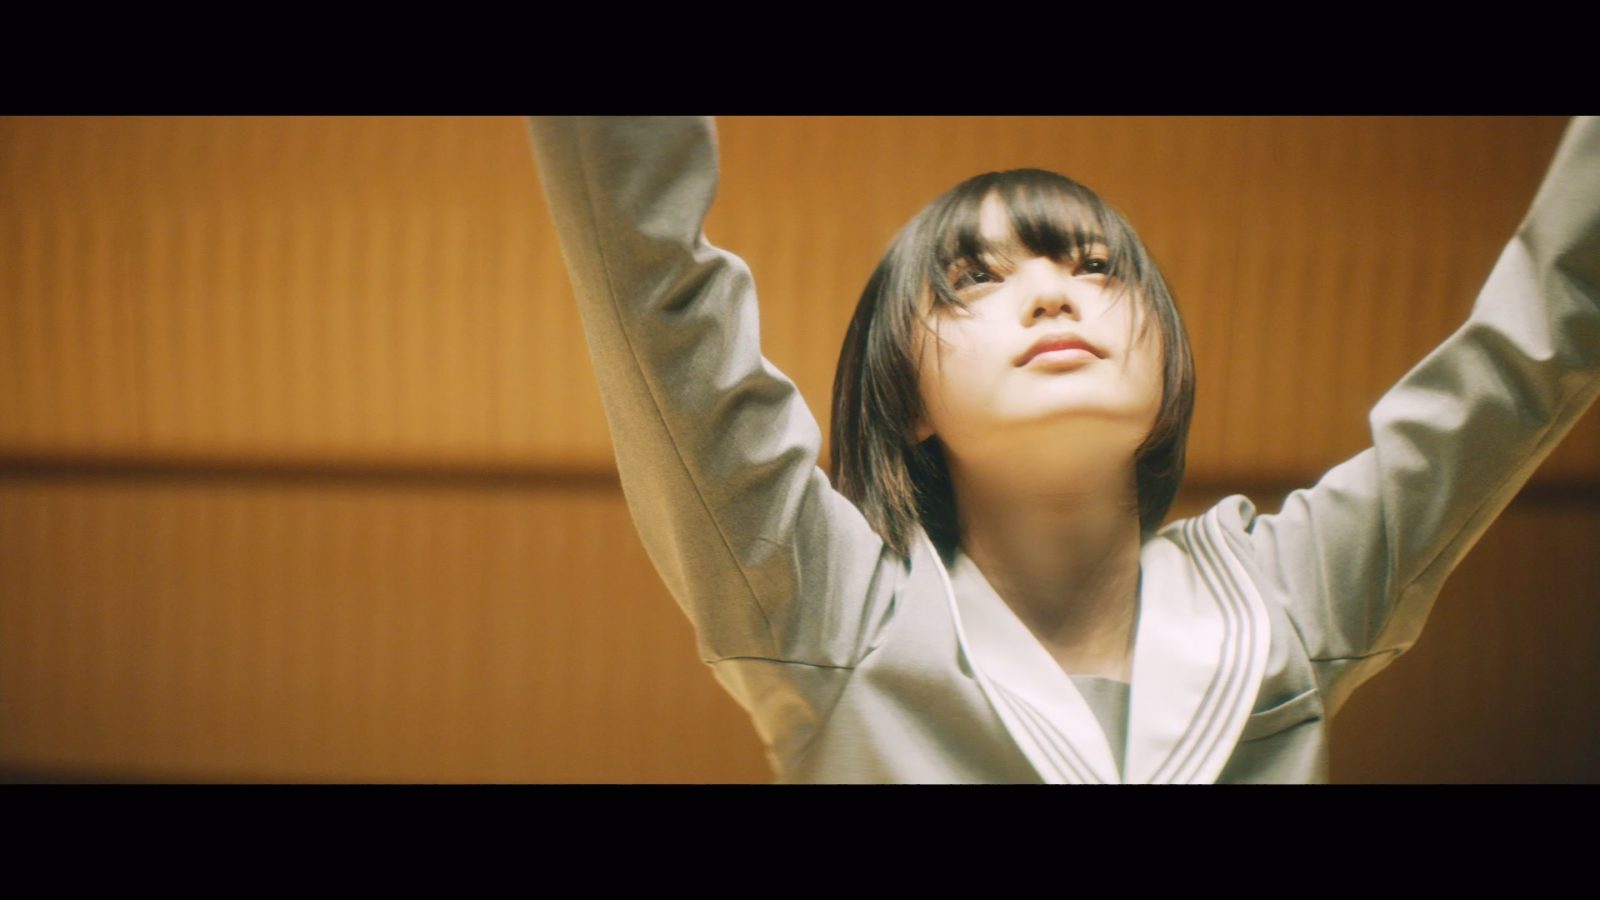 欅坂46 平手友梨奈のソロ曲 角を曲がる のmusic Videoが突如公開に E Talentbank Co Ltd